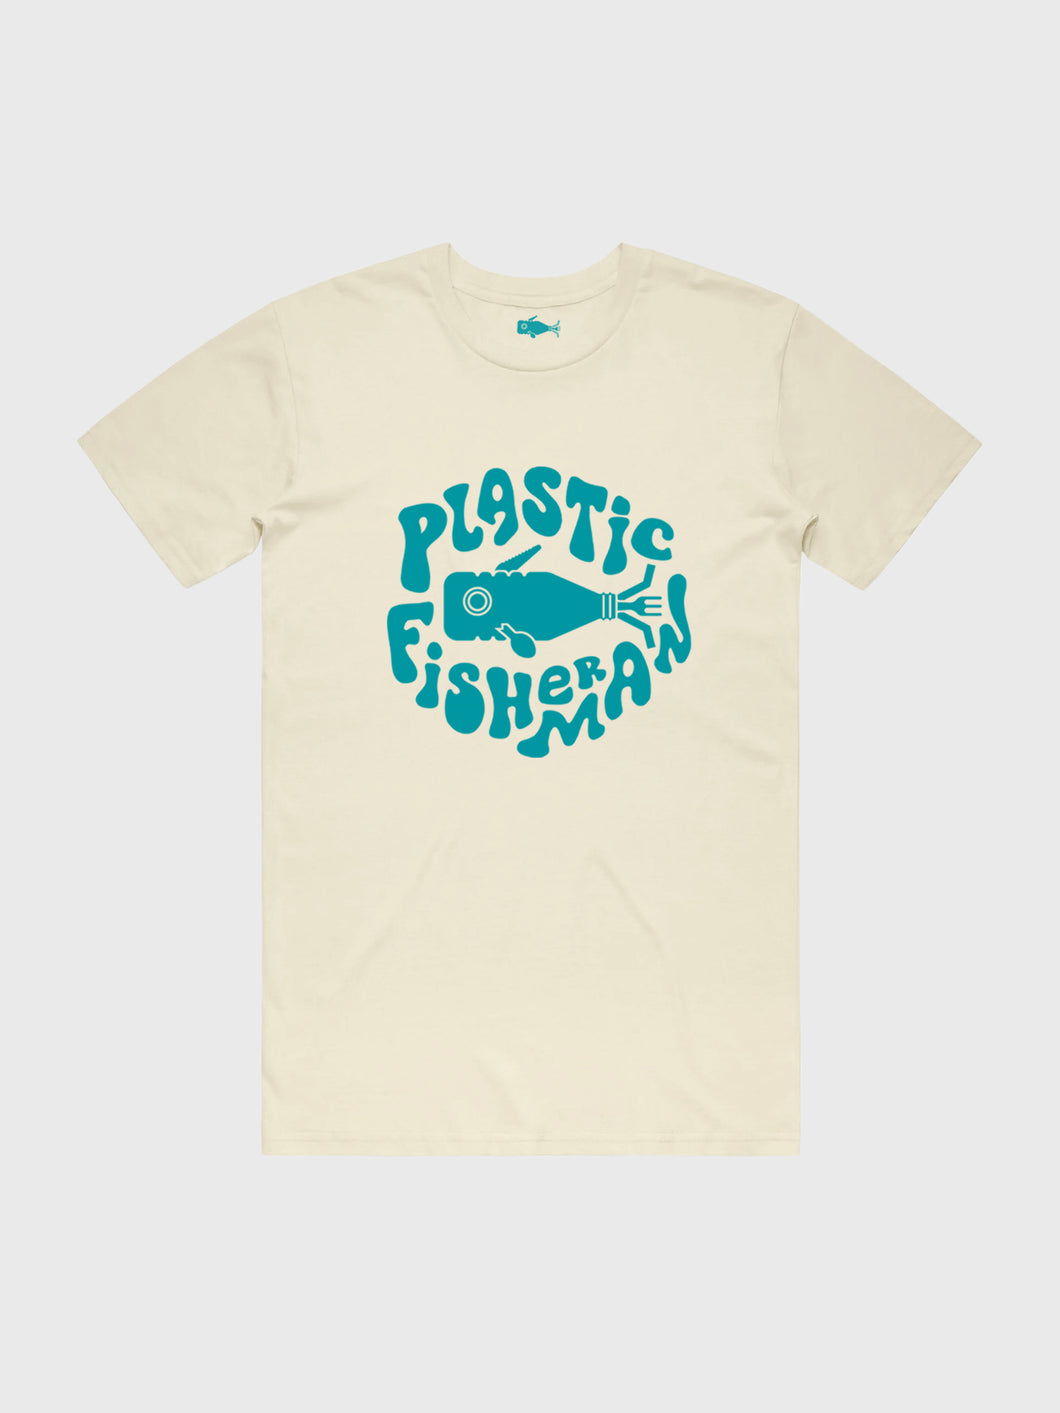 Original Plastic Fisherman T-shirt, Sand Yellow